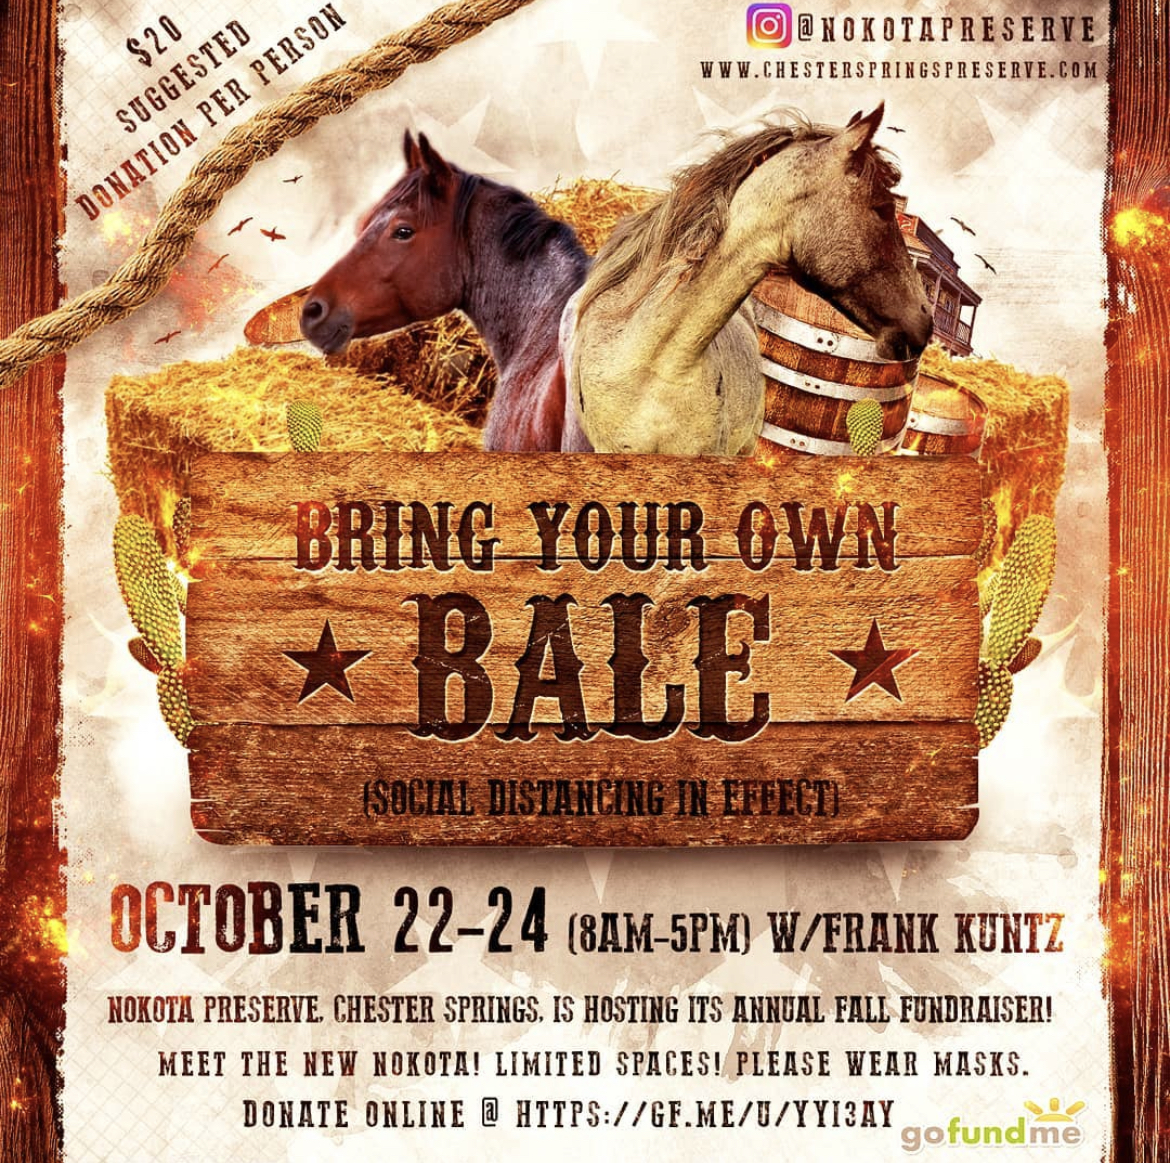 B.Y.O.B. “Bring Your Own Bale” Nov 6